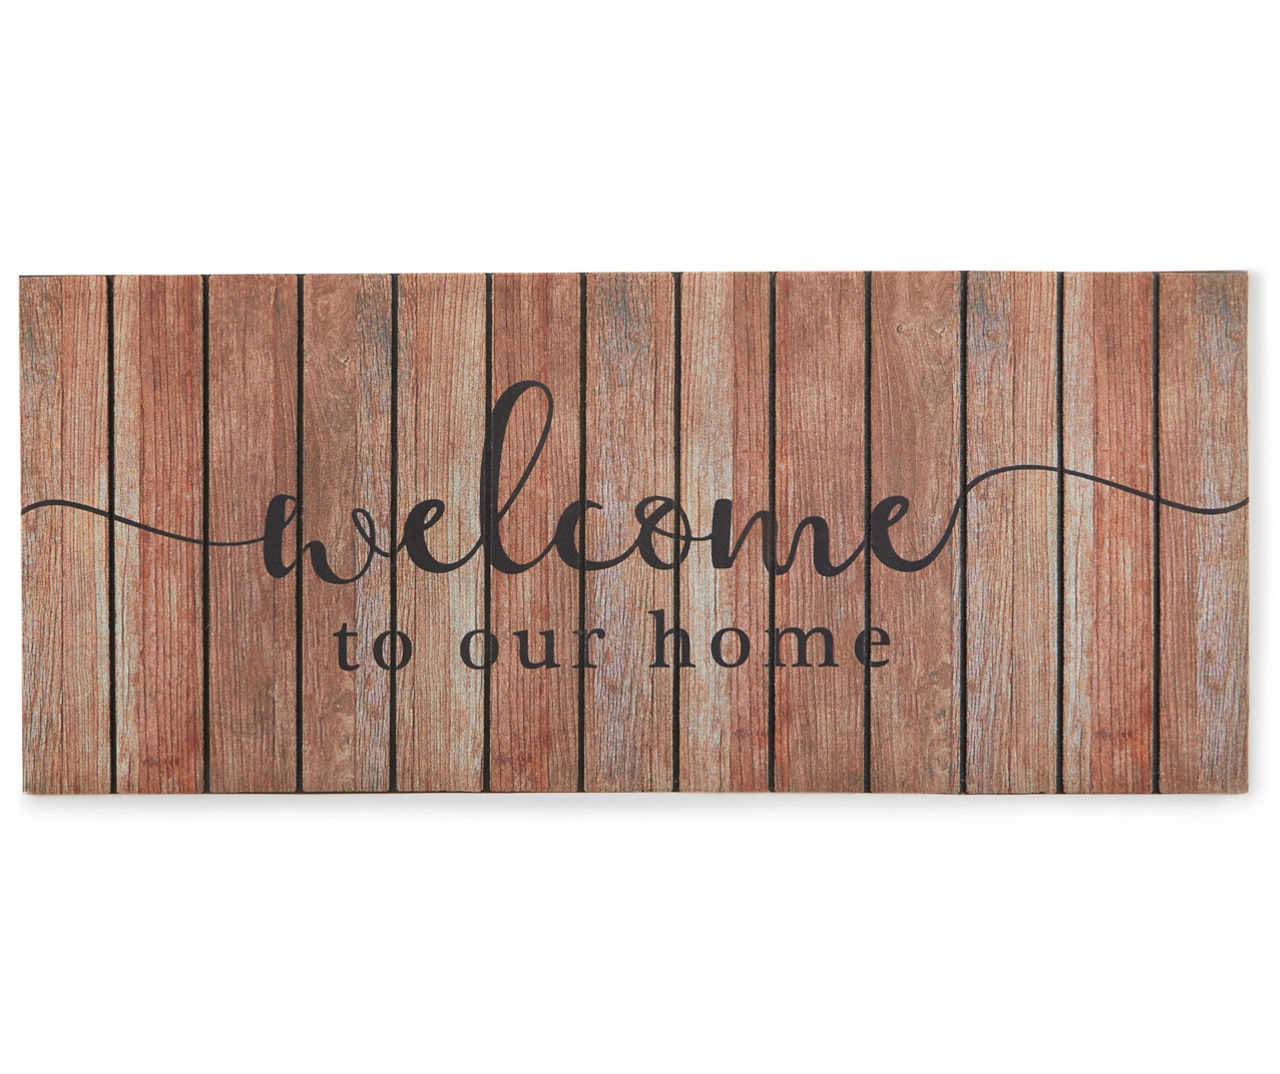 Oaken 'Welcome' Doormat – Rowen Homes